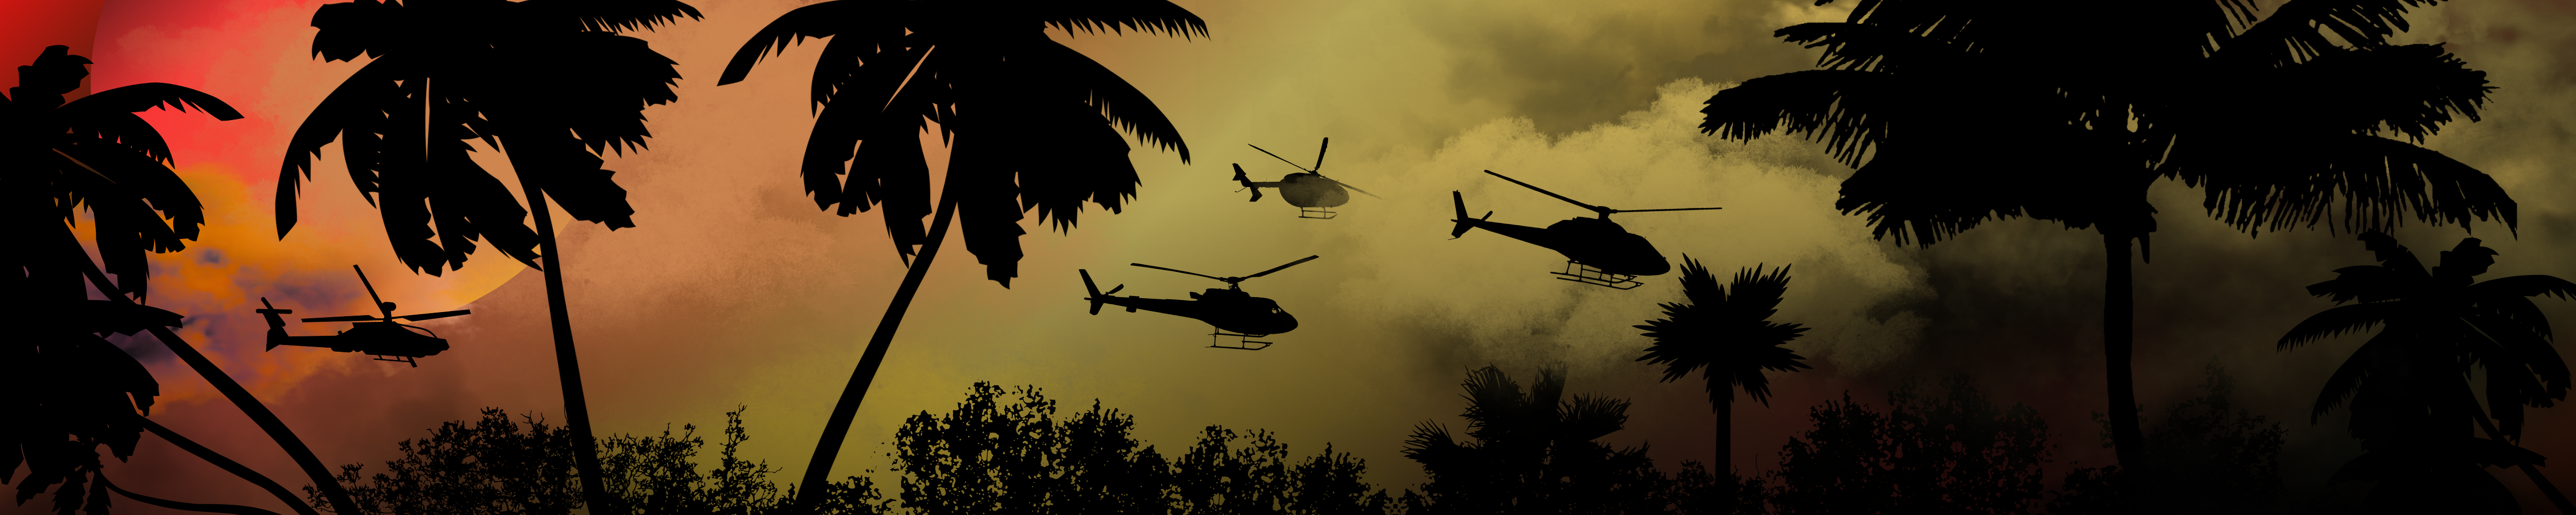 Digital Art Jungle War Movies Apocalypse Now Fan Art 5000x1000